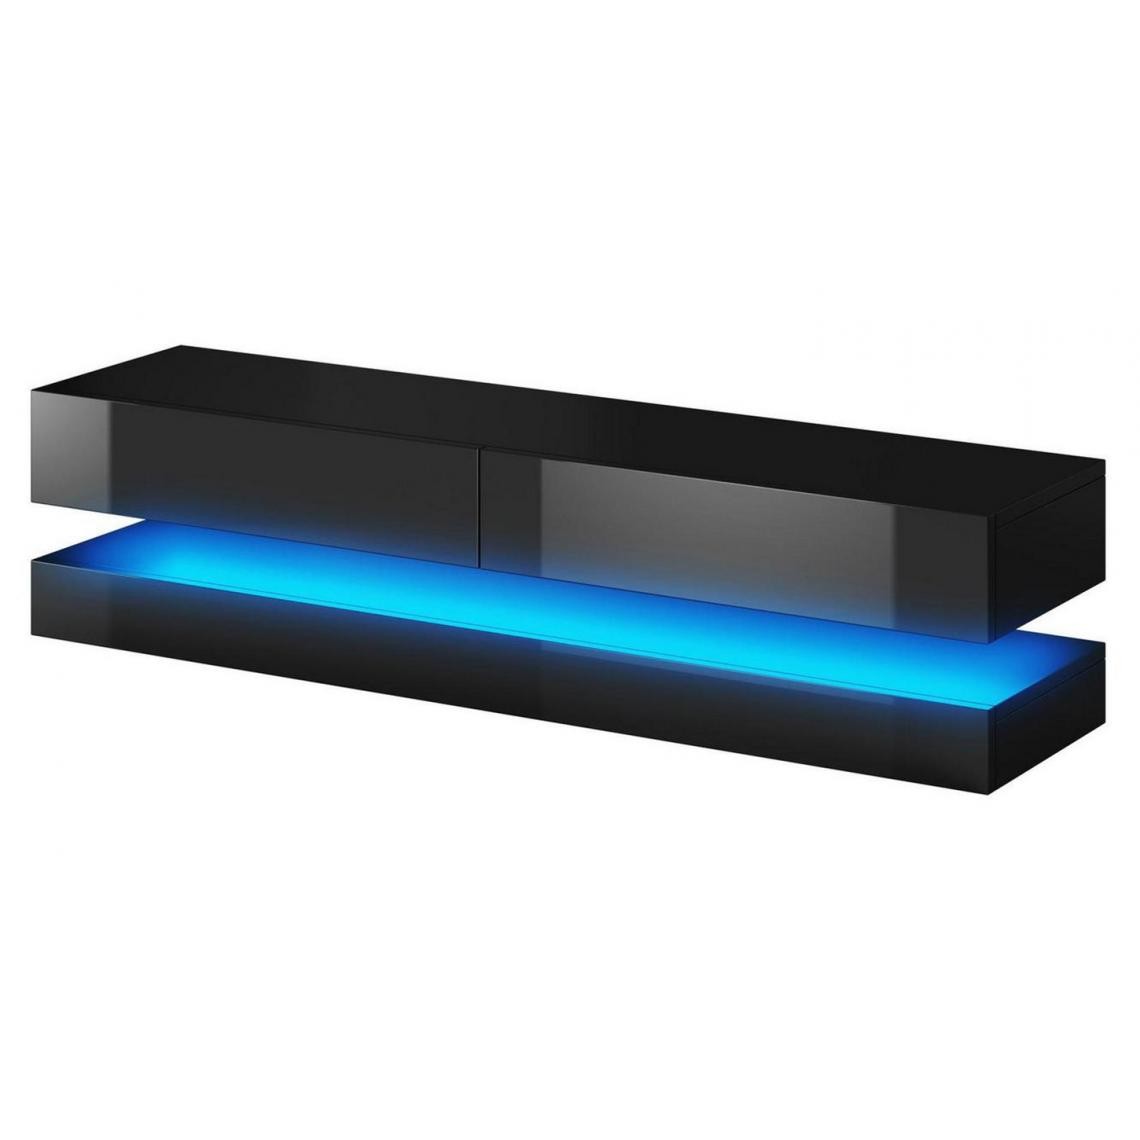 Pegane - Meuble TV coloris noir mat / noir brillant avec éclairage LED bleu - Hauteur 35 x Longueur 140 x Profondeur 46 cm - Meubles TV, Hi-Fi